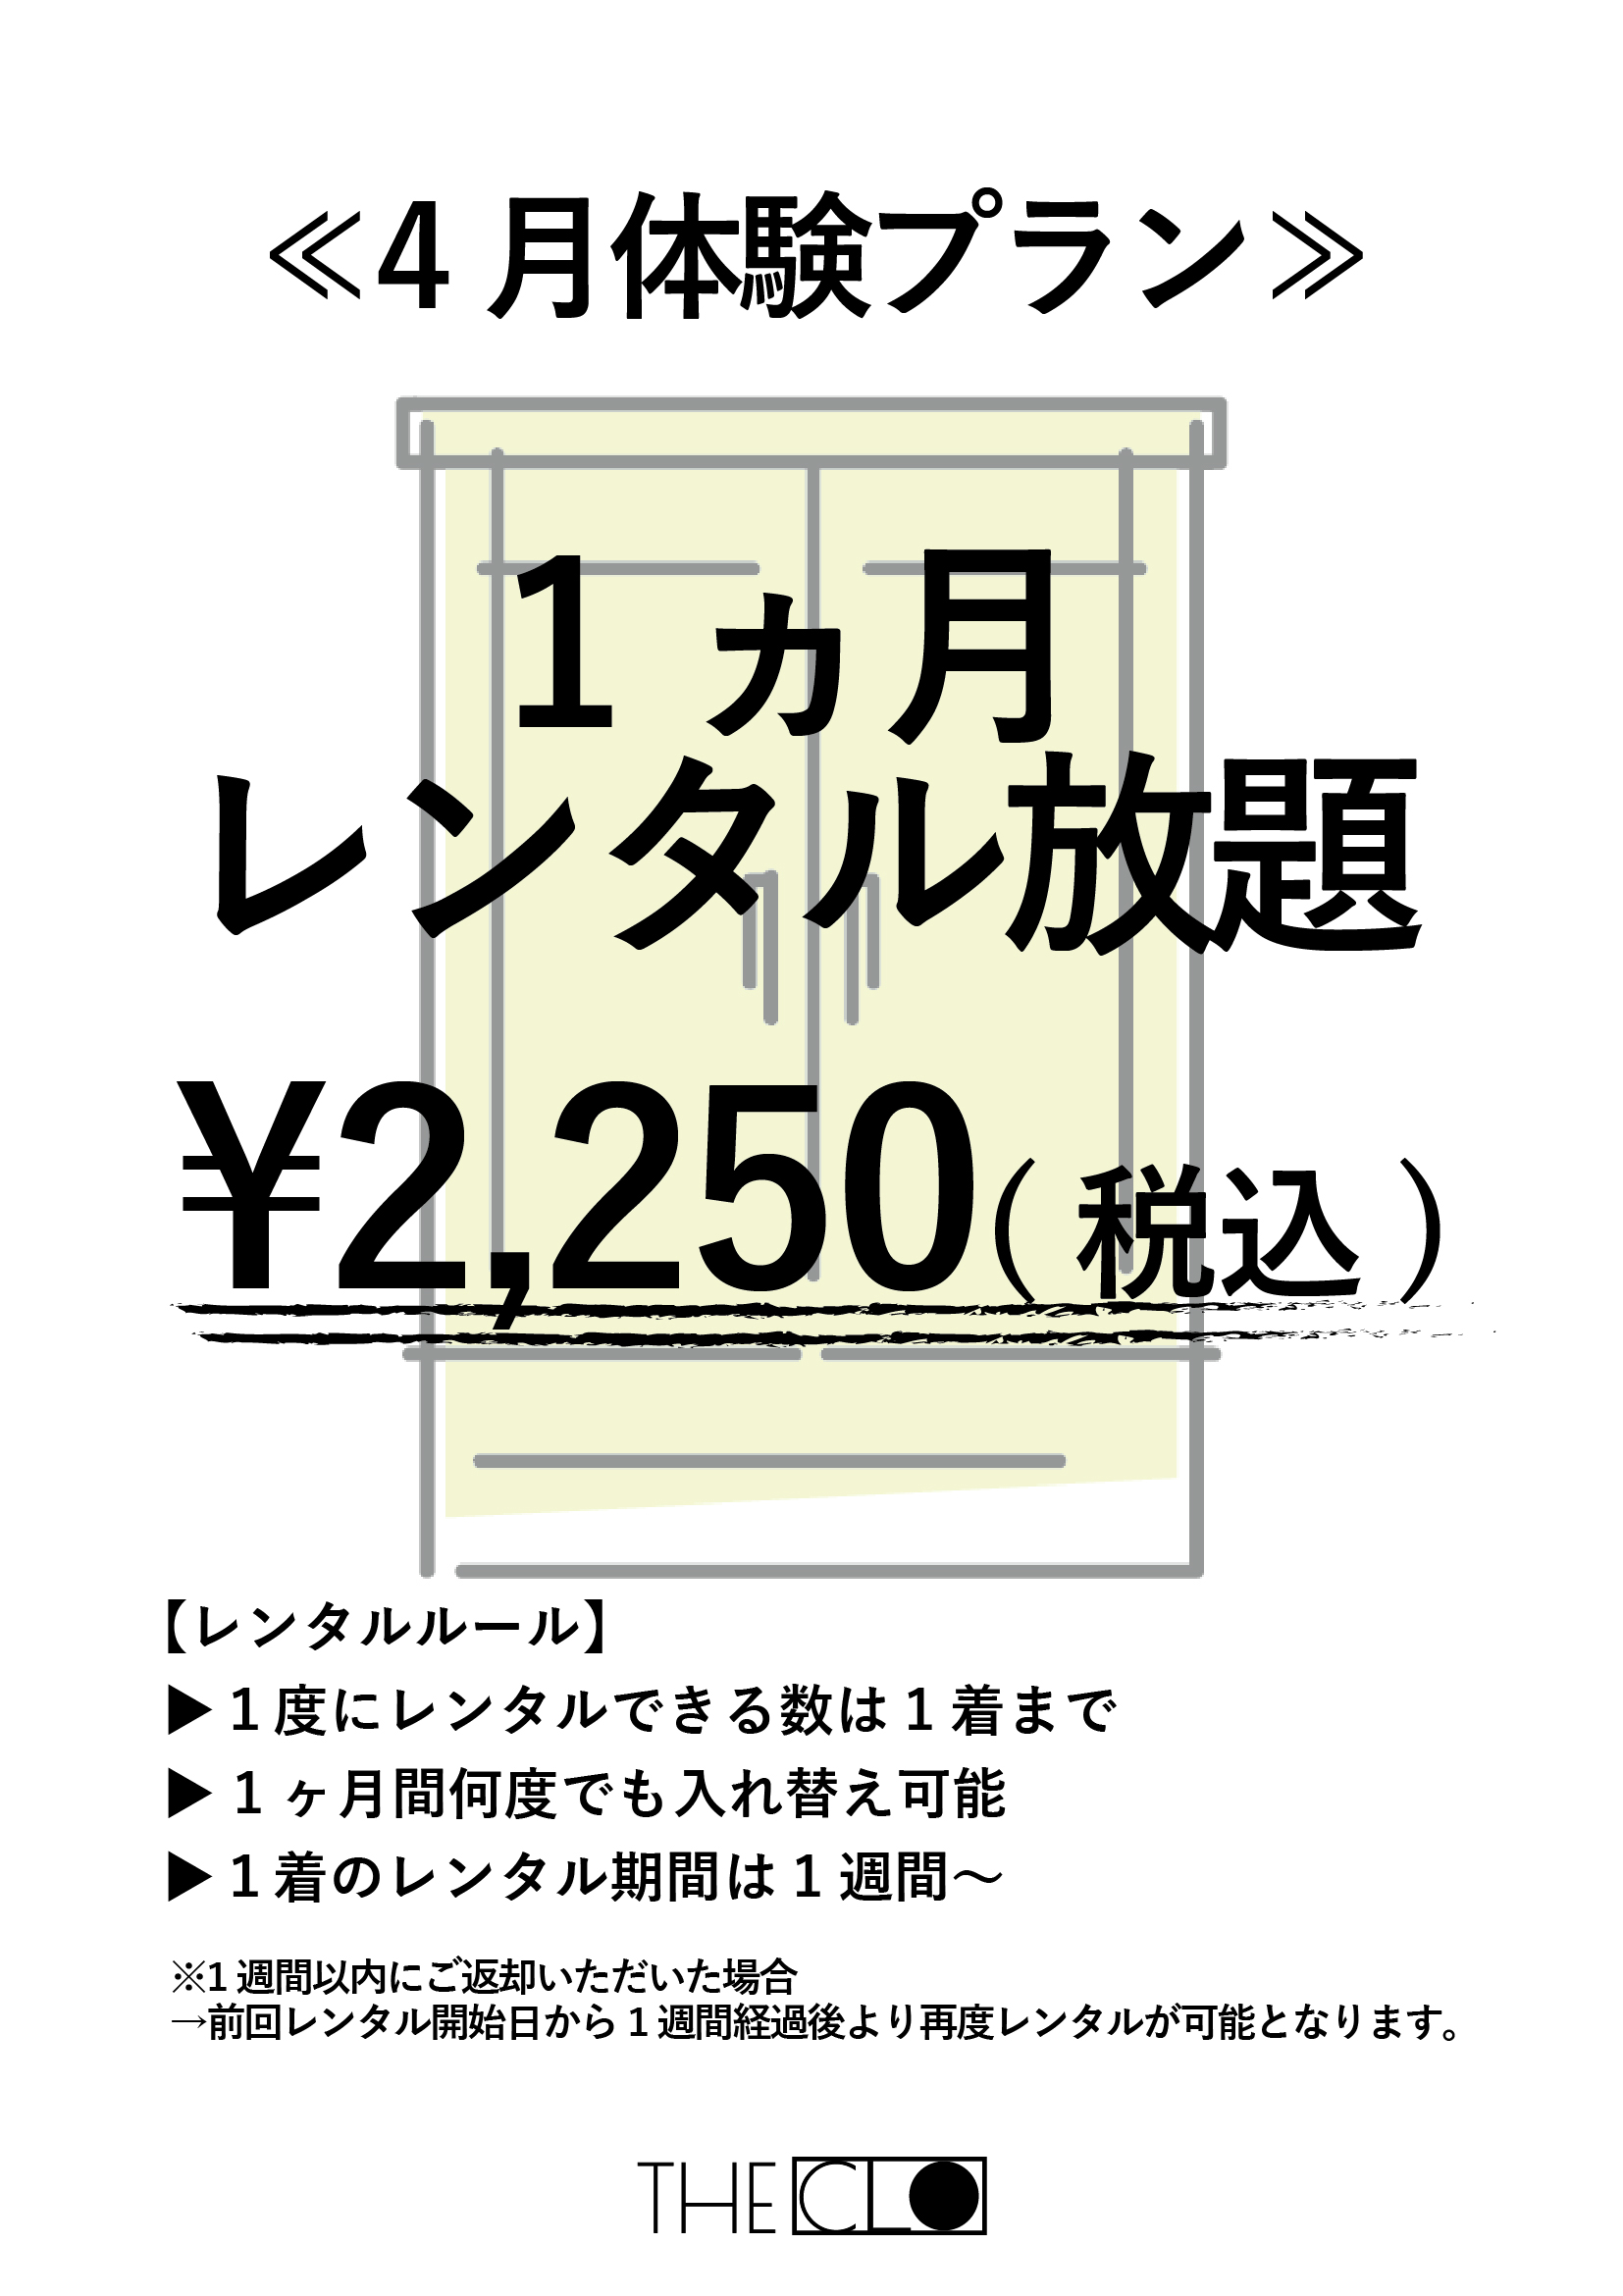 仙台で「服の大量廃棄問題」解決を目指すサービス≪THECLO≫、試験的定額プラン開始